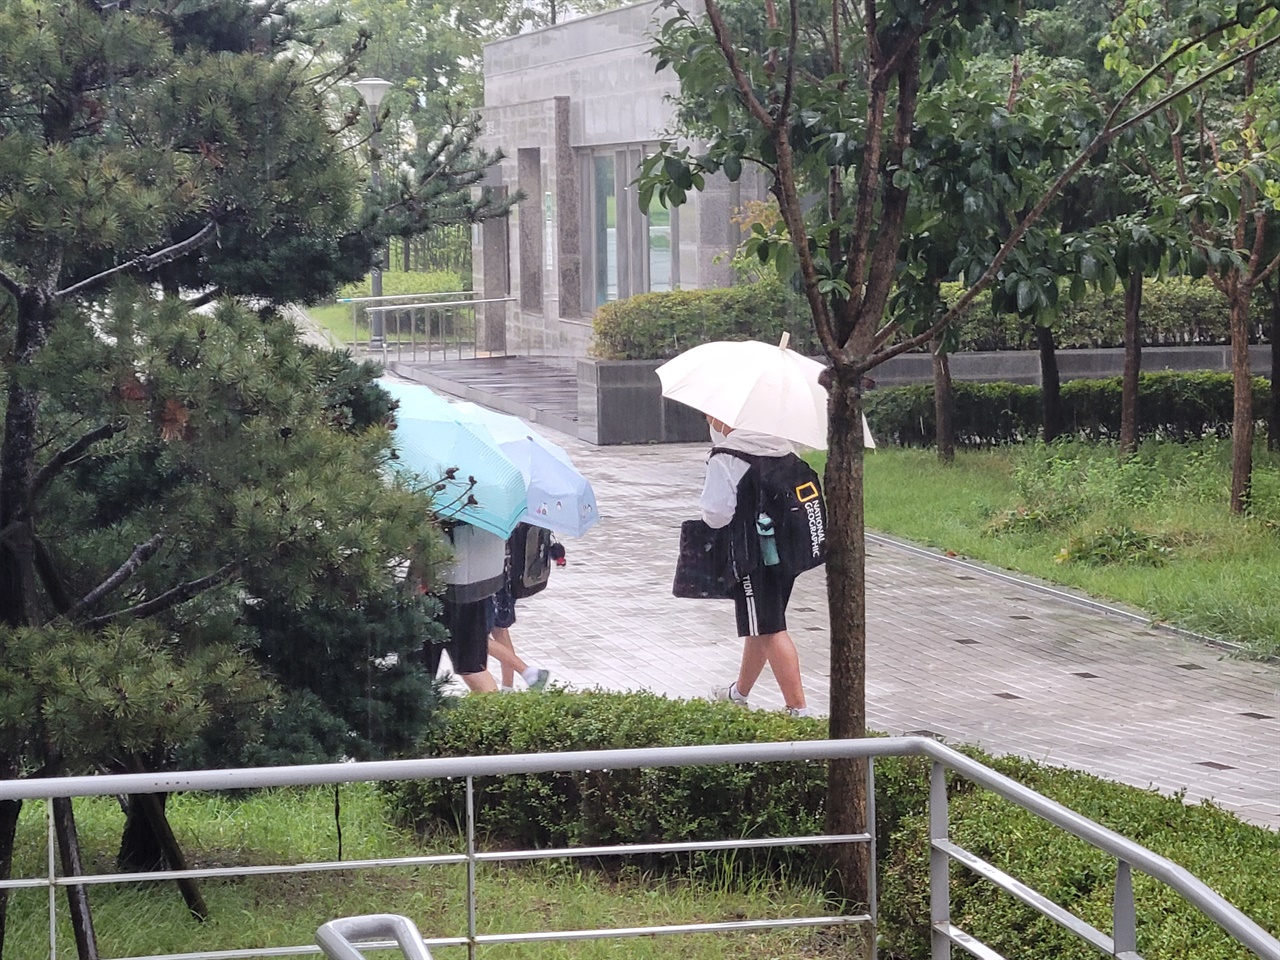 홍성지역에 오전 8시를 기해 호우주의보가 발효된 가운데 많은 비가 내리고 있다. 학생들이 우산을 쓰고 등교하고 있다.
